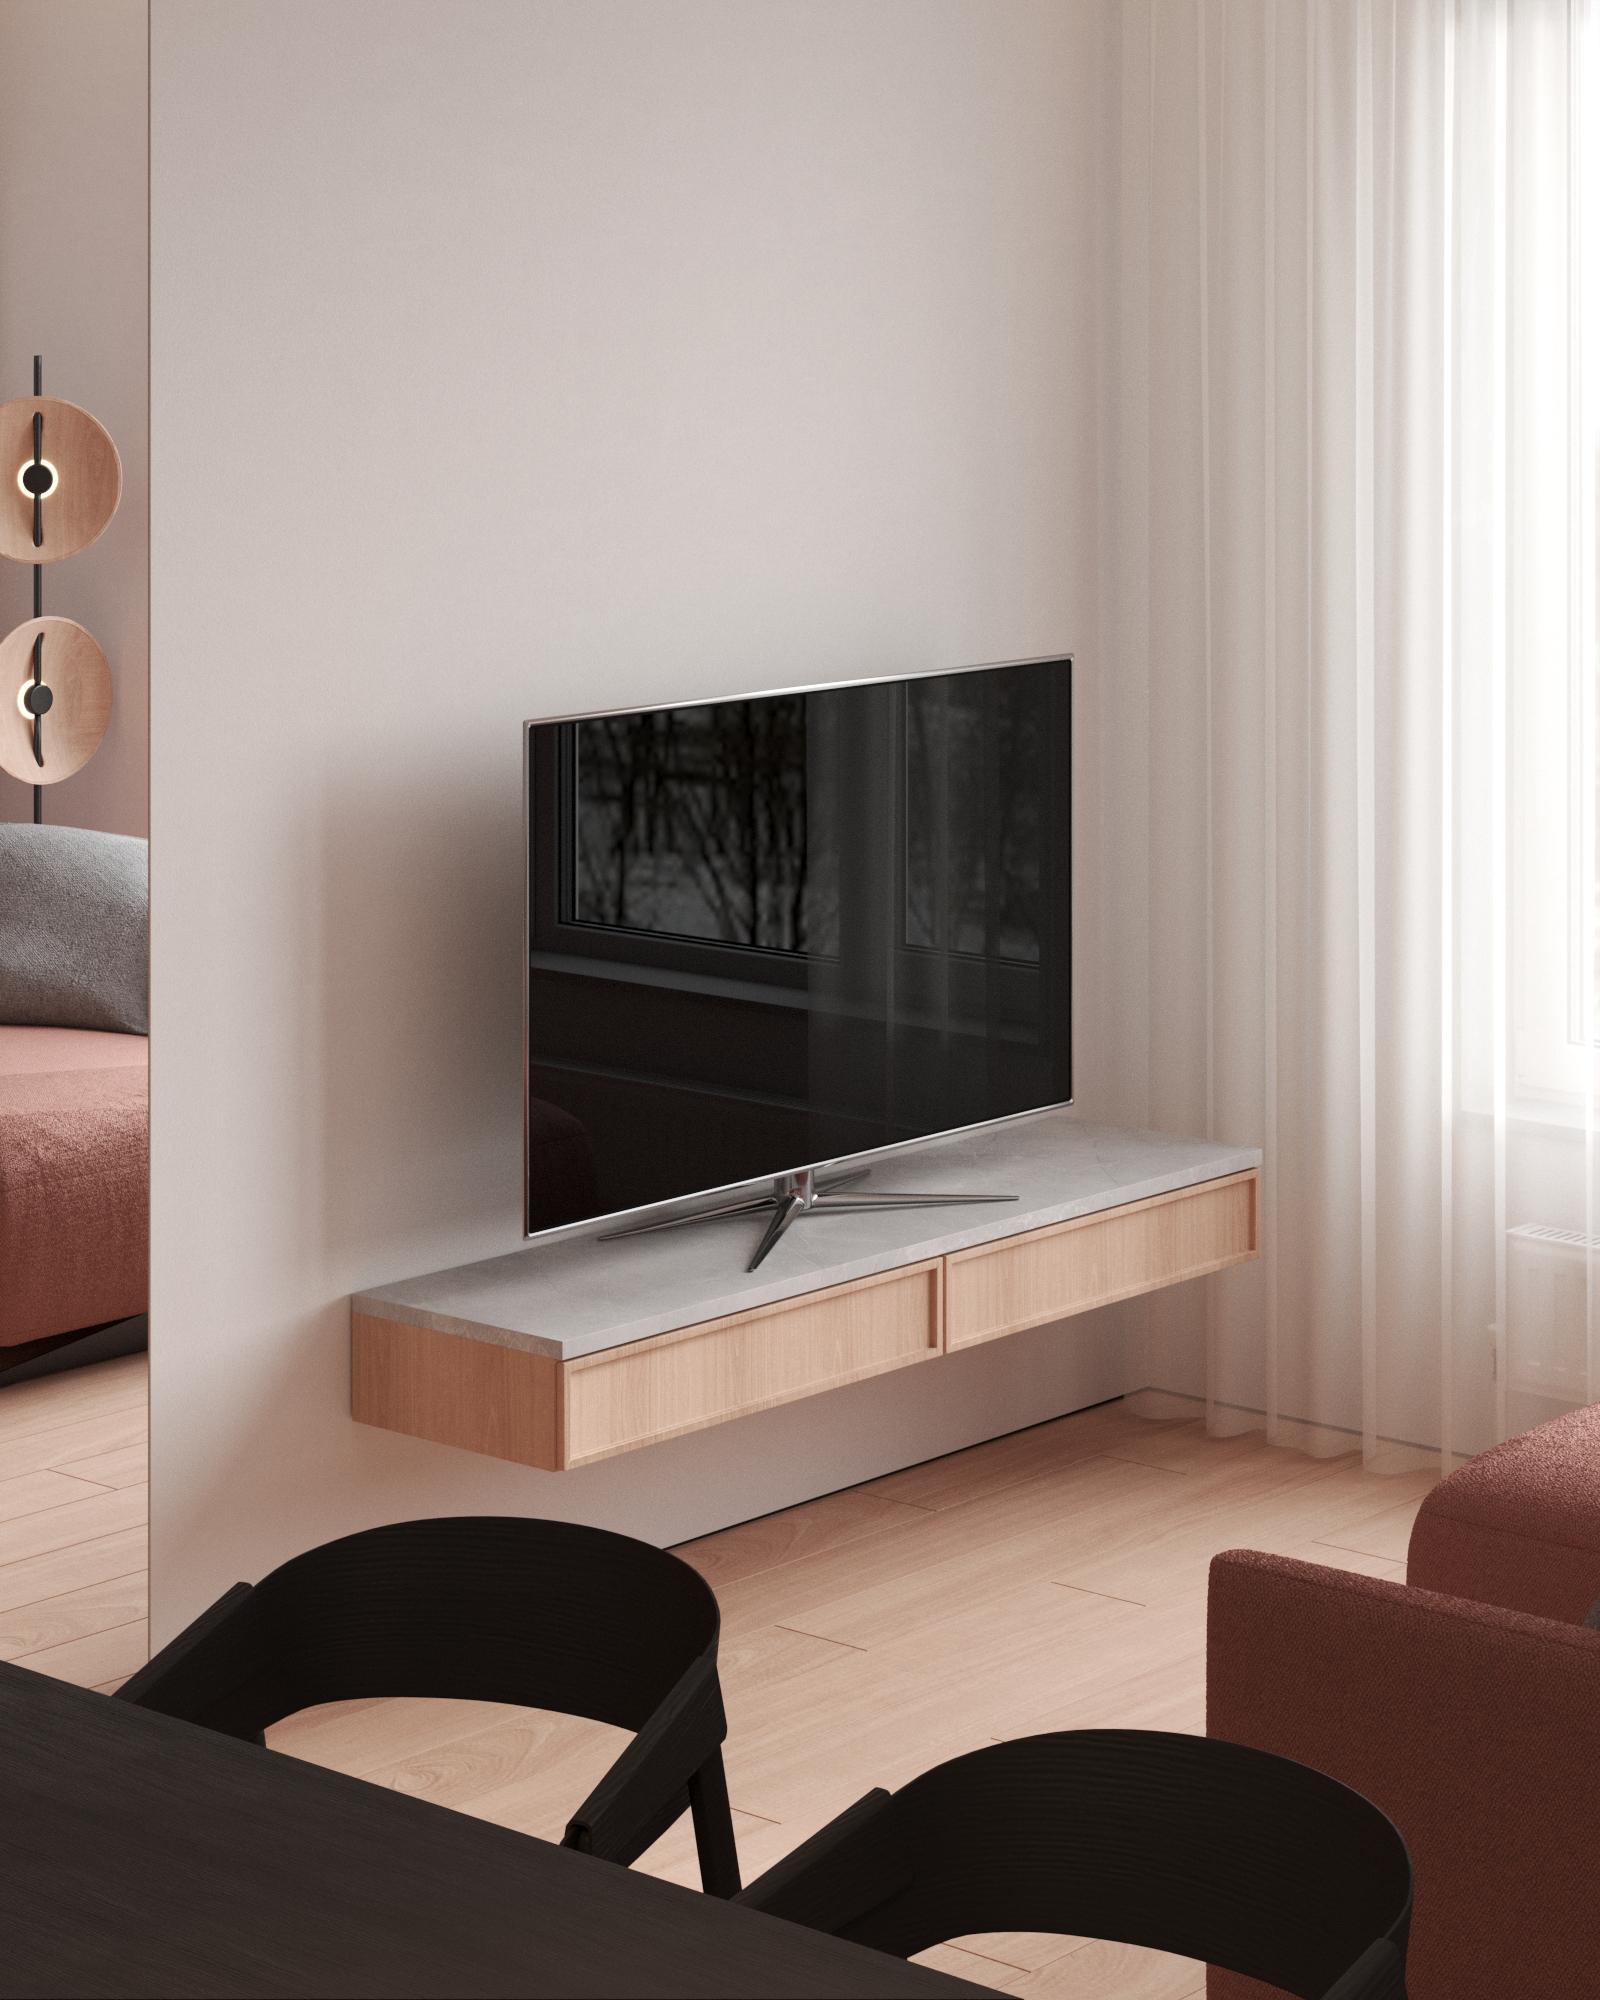 Интерьер с полками над телевизором, стеной с телевизором, телевизором на рейках и телевизором на стене